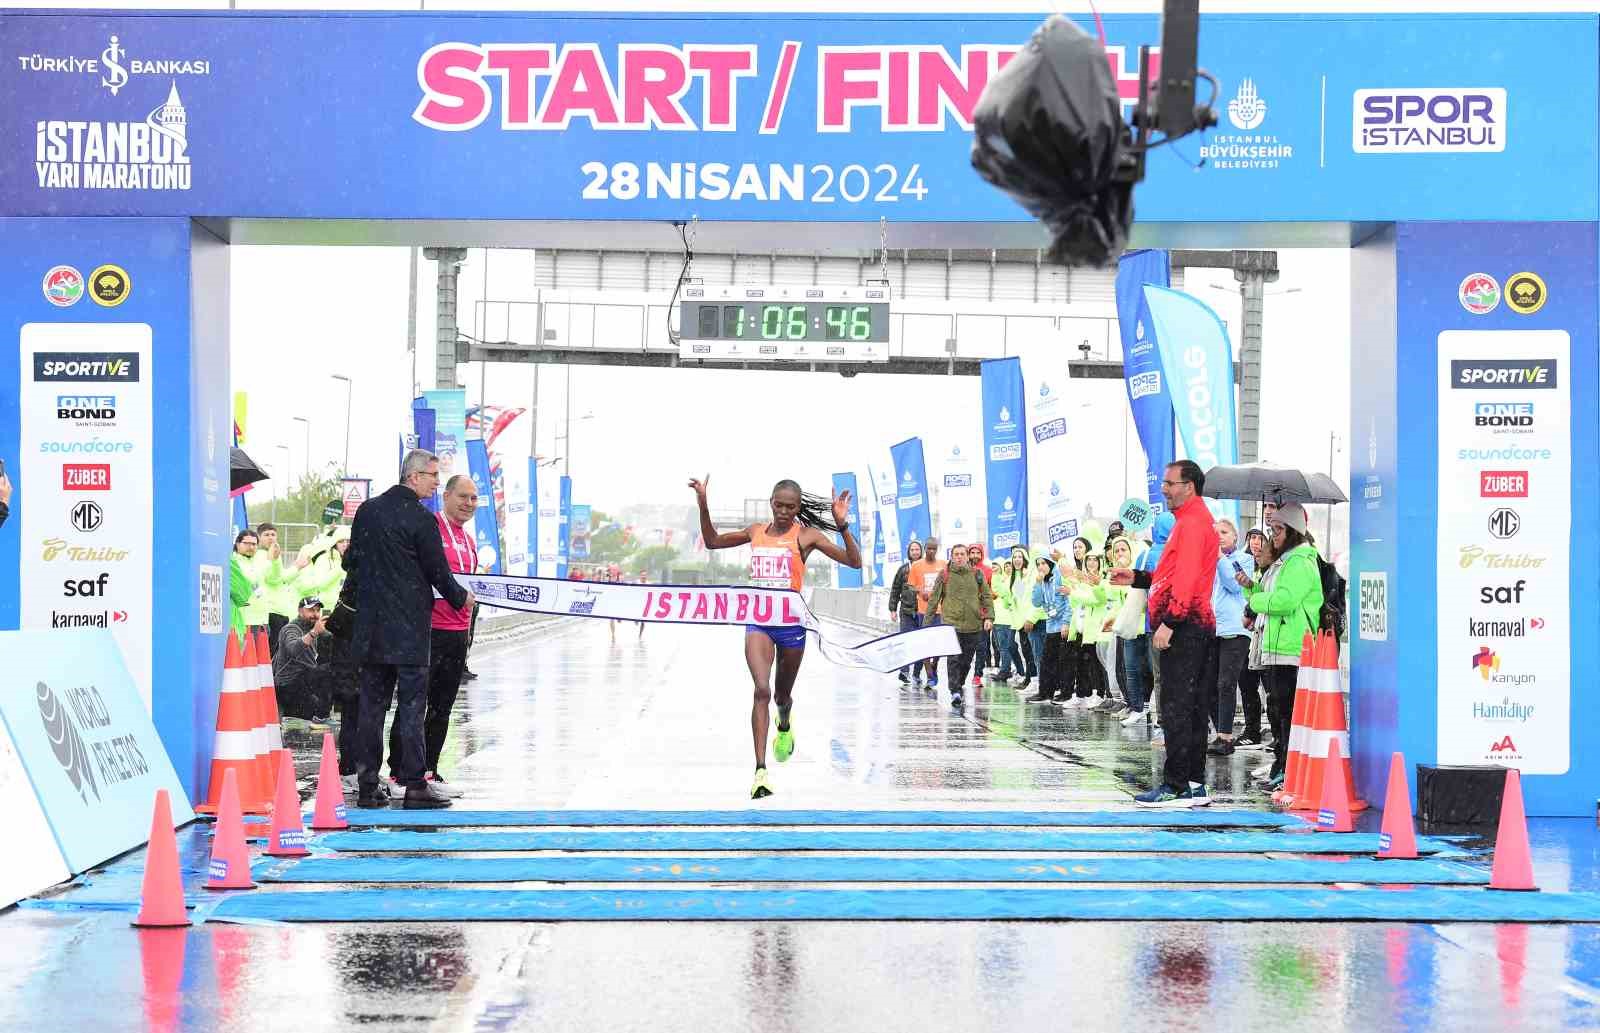 Türkiye İş Bankası 19. İstanbul Yarı Maratonu’nu erkeklerde Hicham Amghar, kadınlar Sheila Chelangat kazandı
